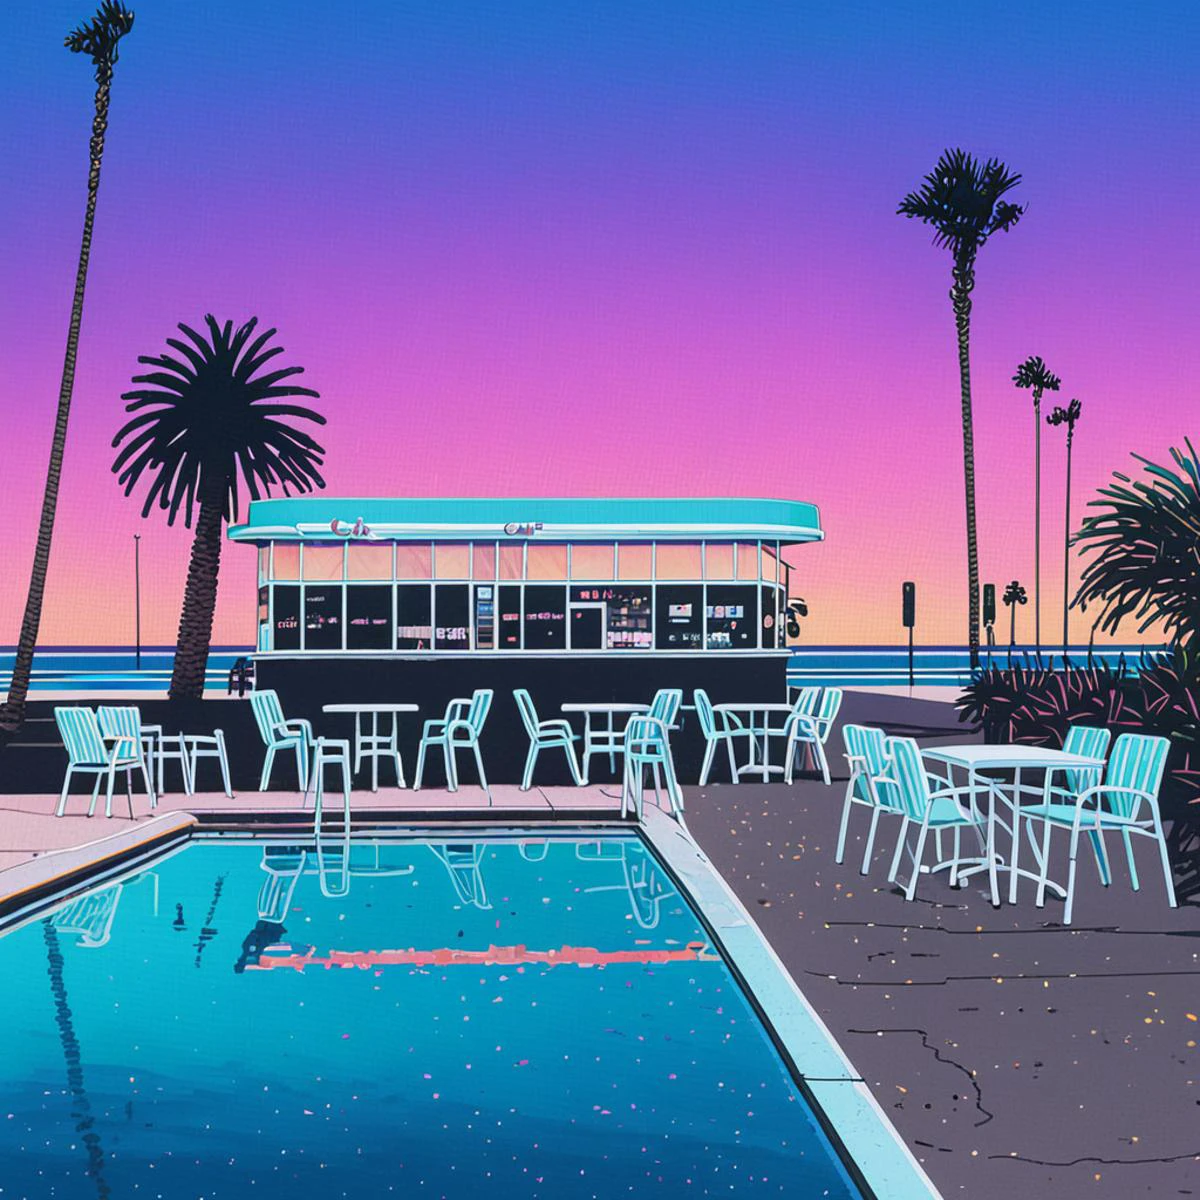 Lifted view of A Vintage 80's Cafe with pool surrounded by beach and Palm Trees at sunset, céu gradiente, reflexão da água, estrada, cadeiras, prédio, 